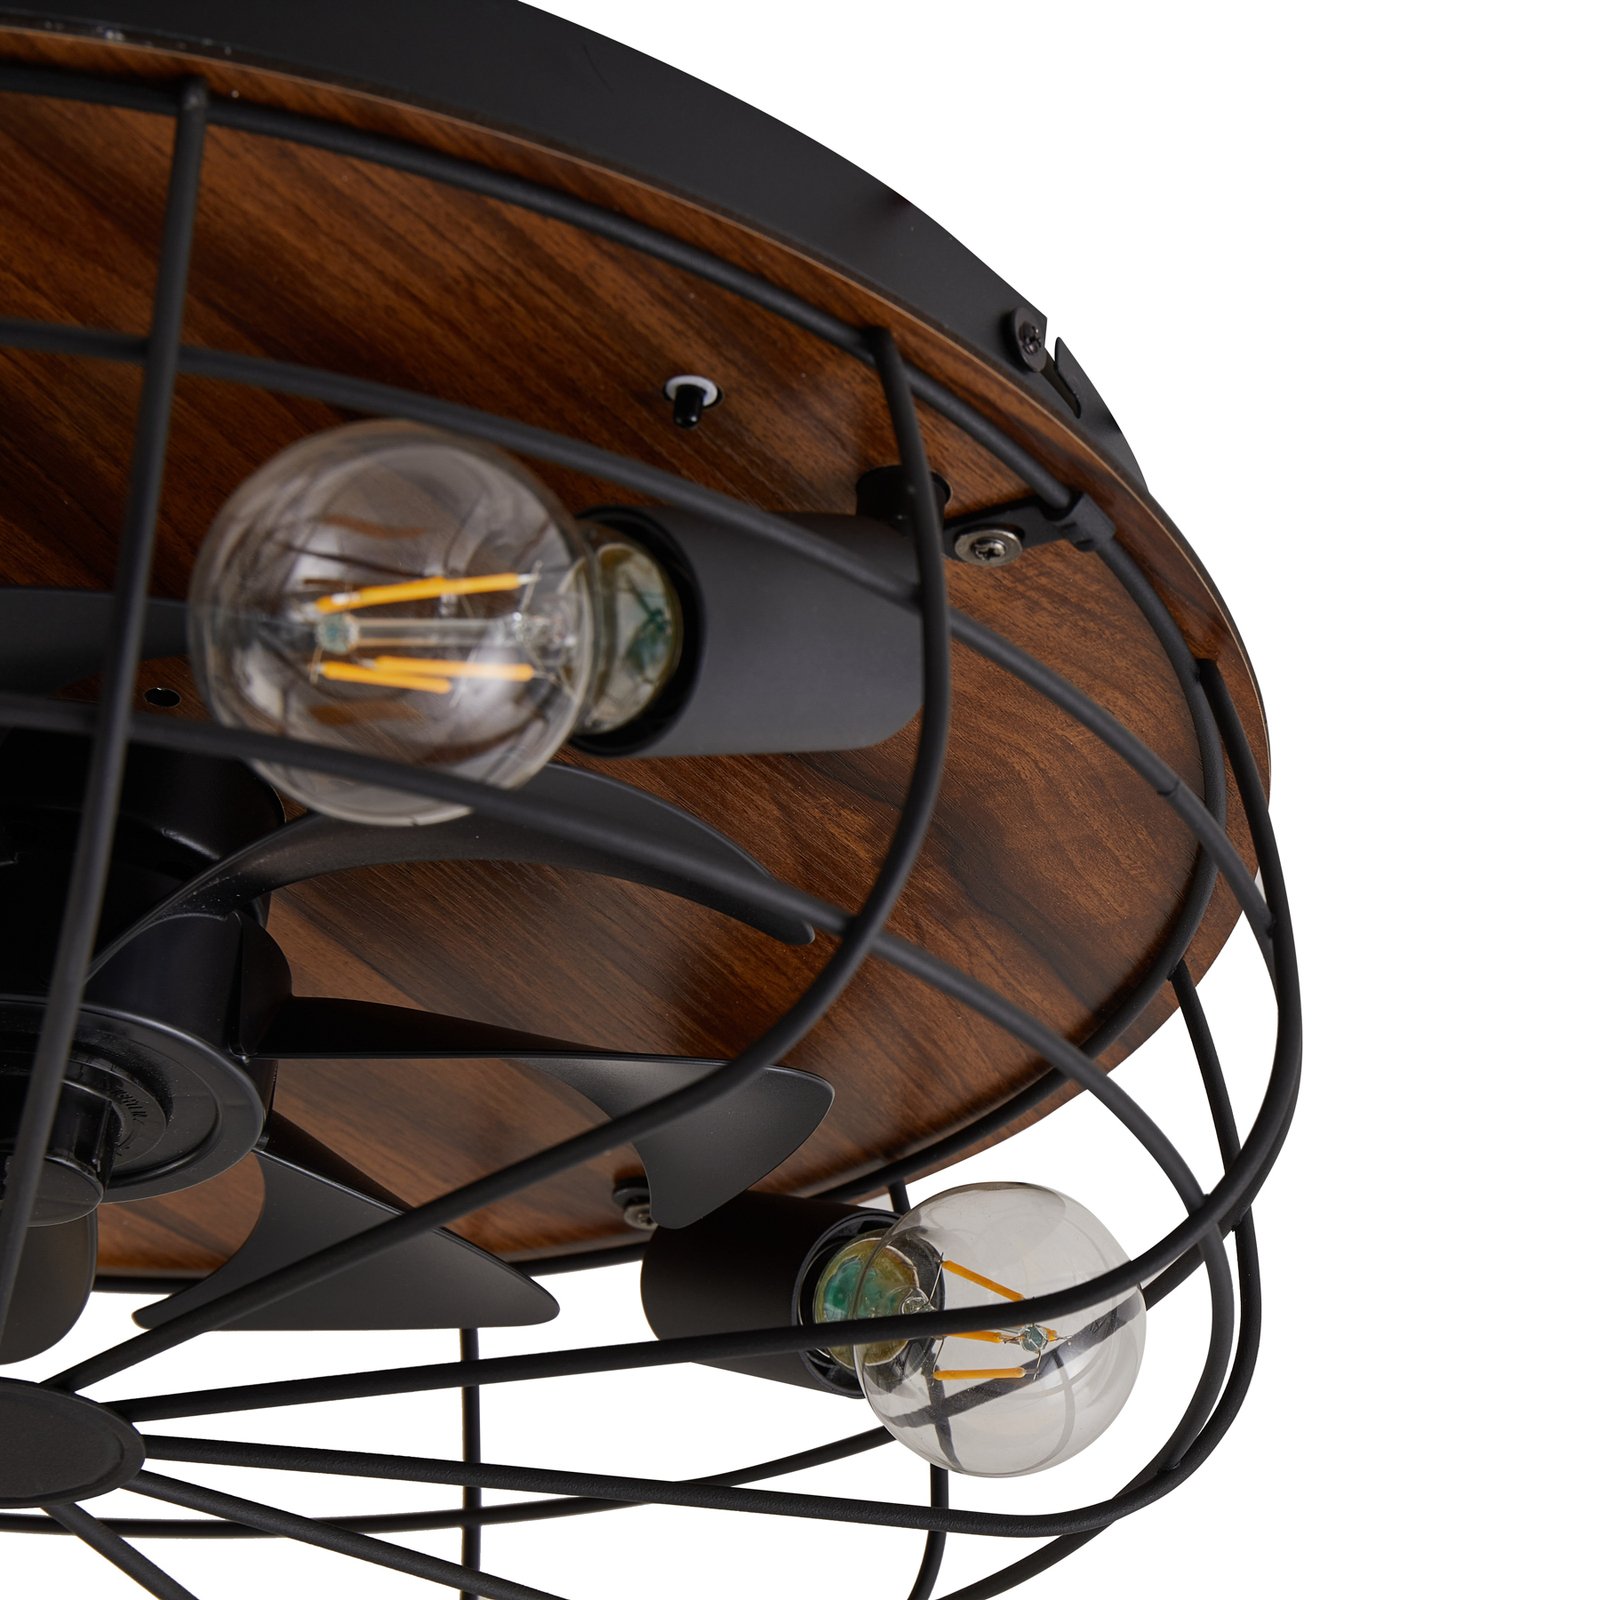 Stropní ventilátor Starluna s osvětlením Corlys, tichý, dřevo